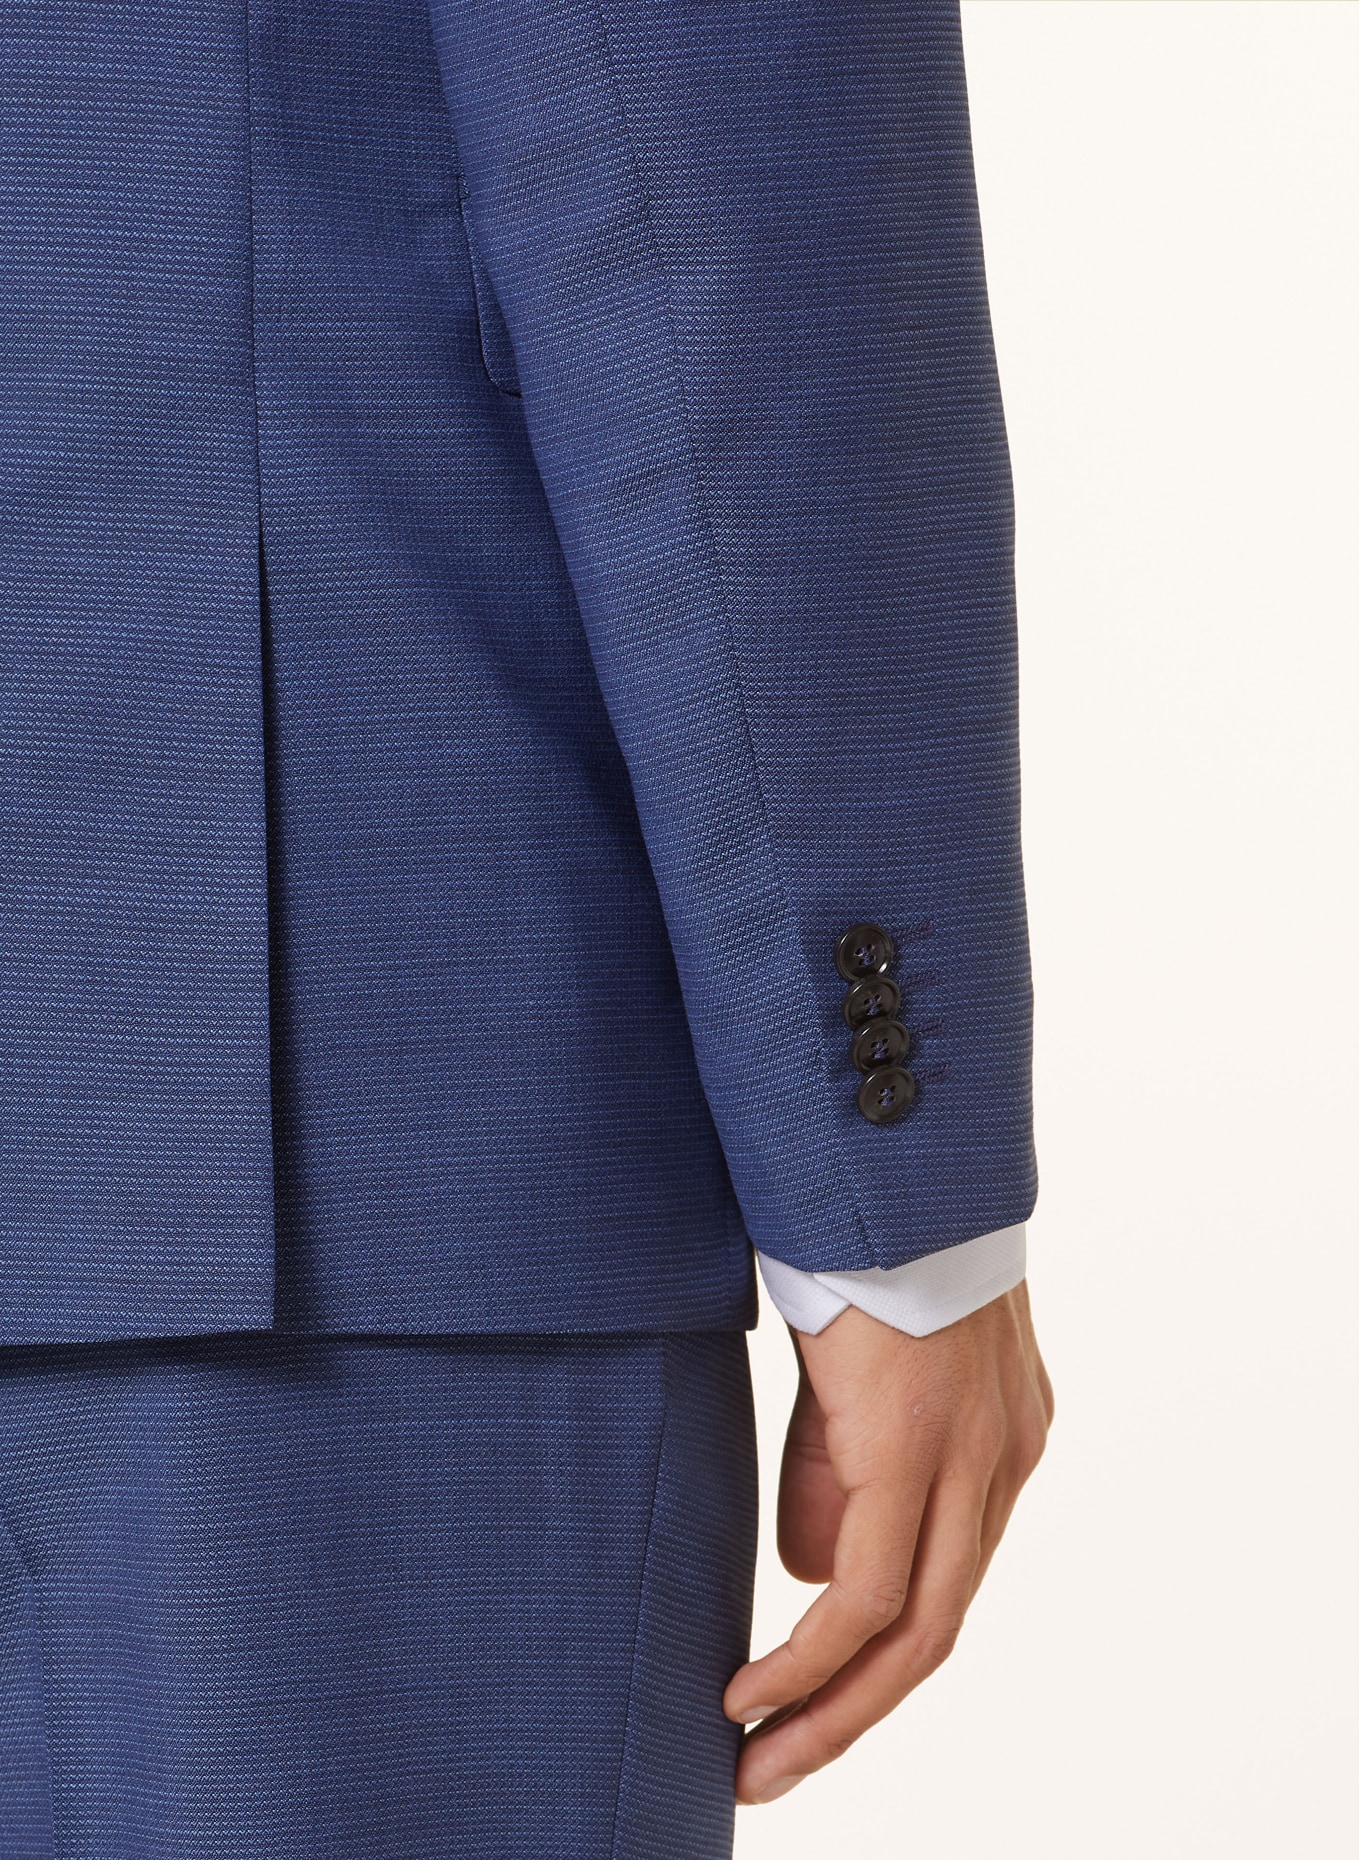 TIGER OF SWEDEN Suit jacket JUSTIN slim fit, Color: 22L Smokey Blue (Image 6)